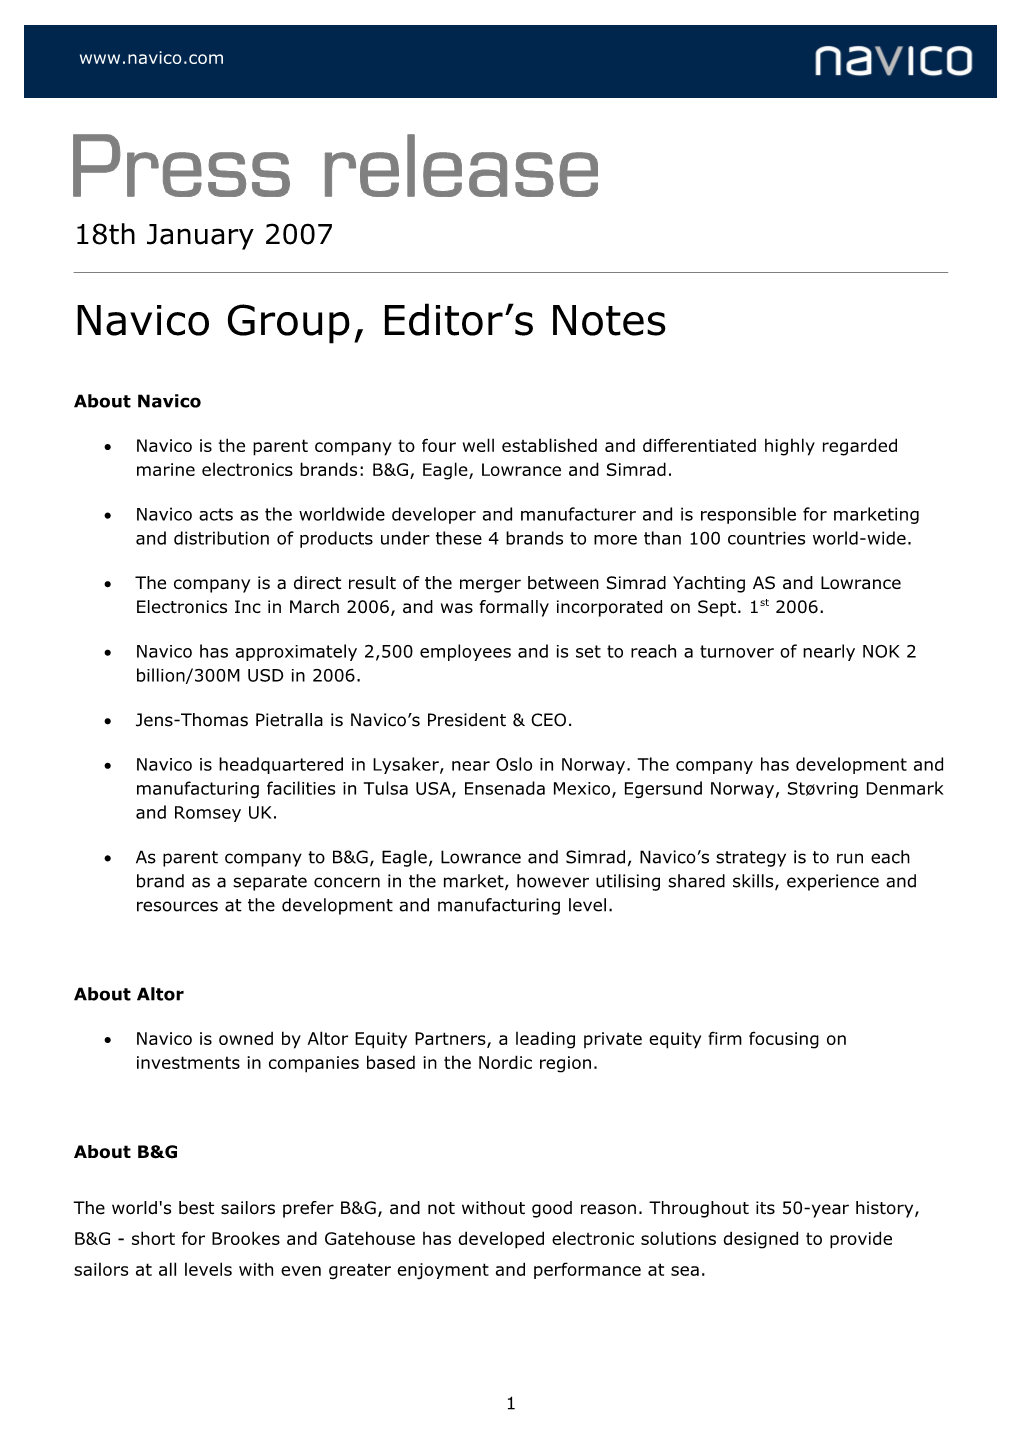 Press Release - Navico